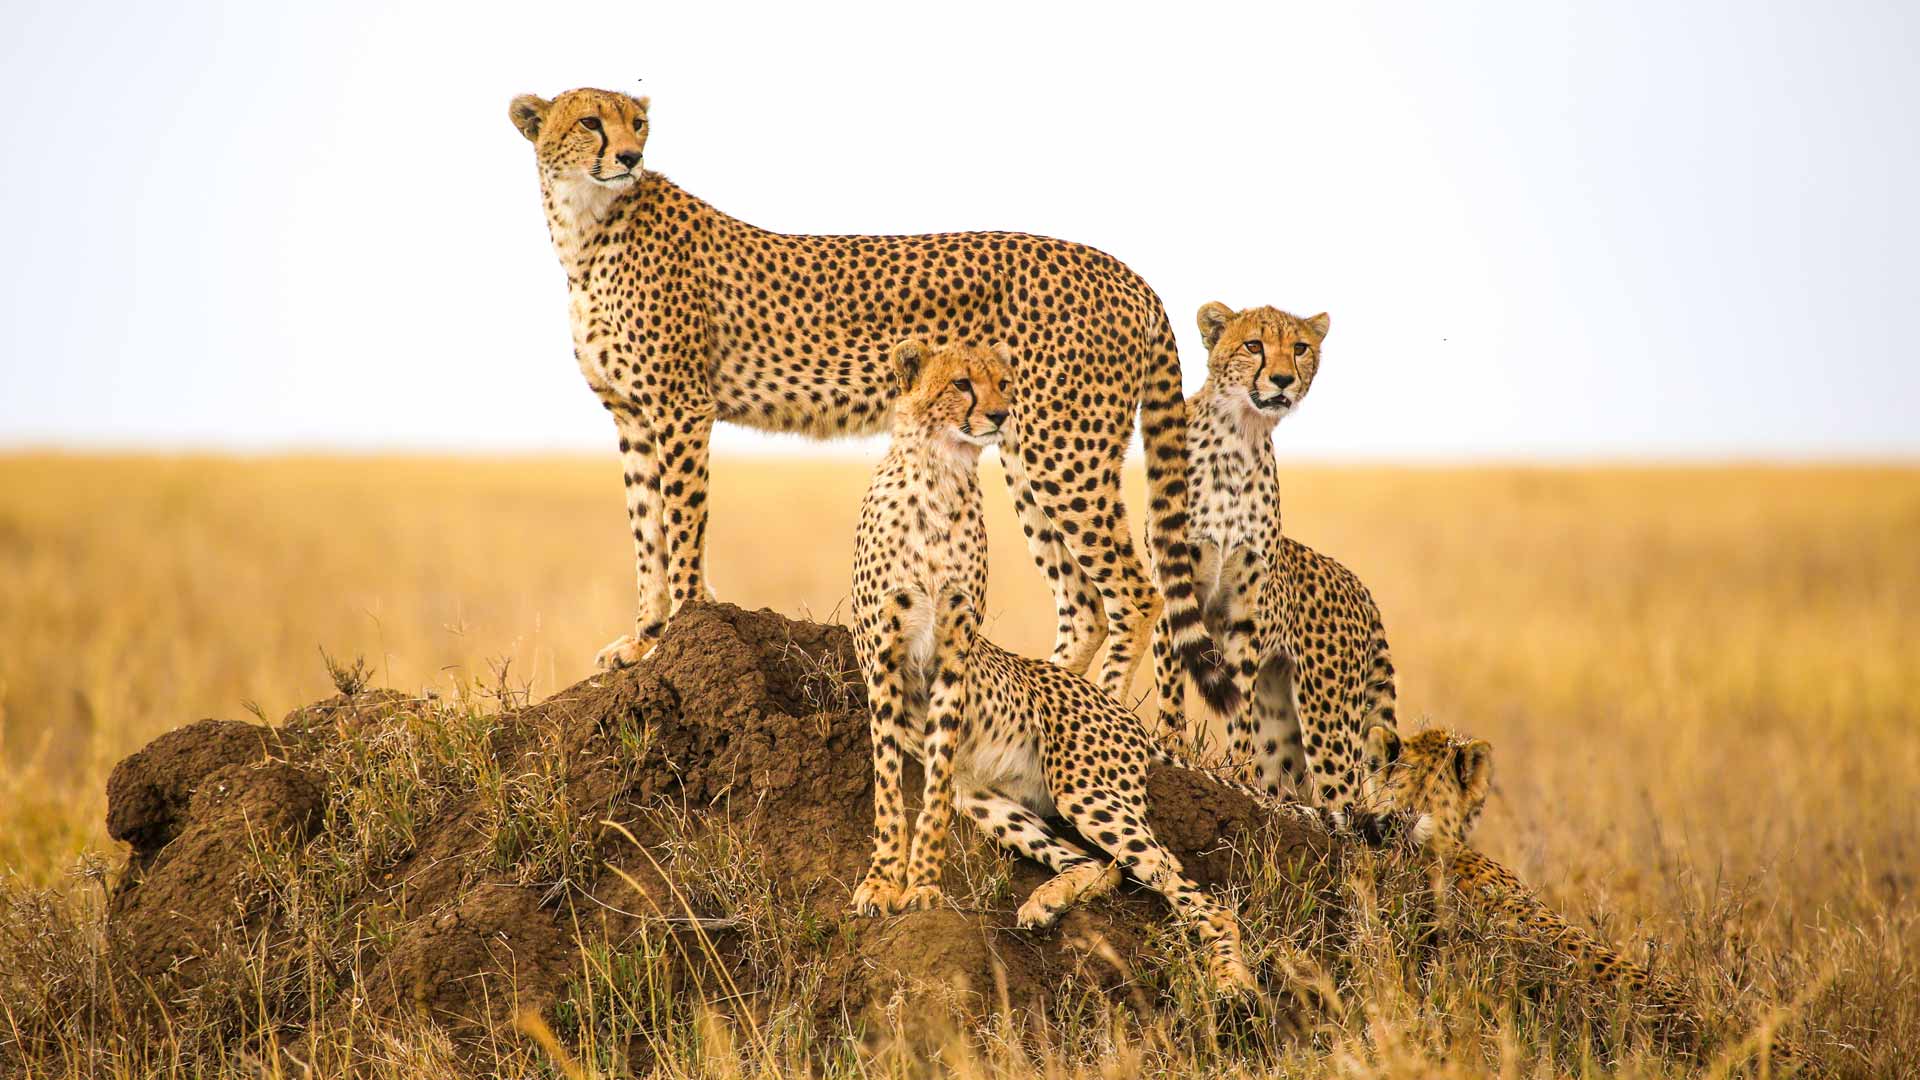 Serengetisopalodge